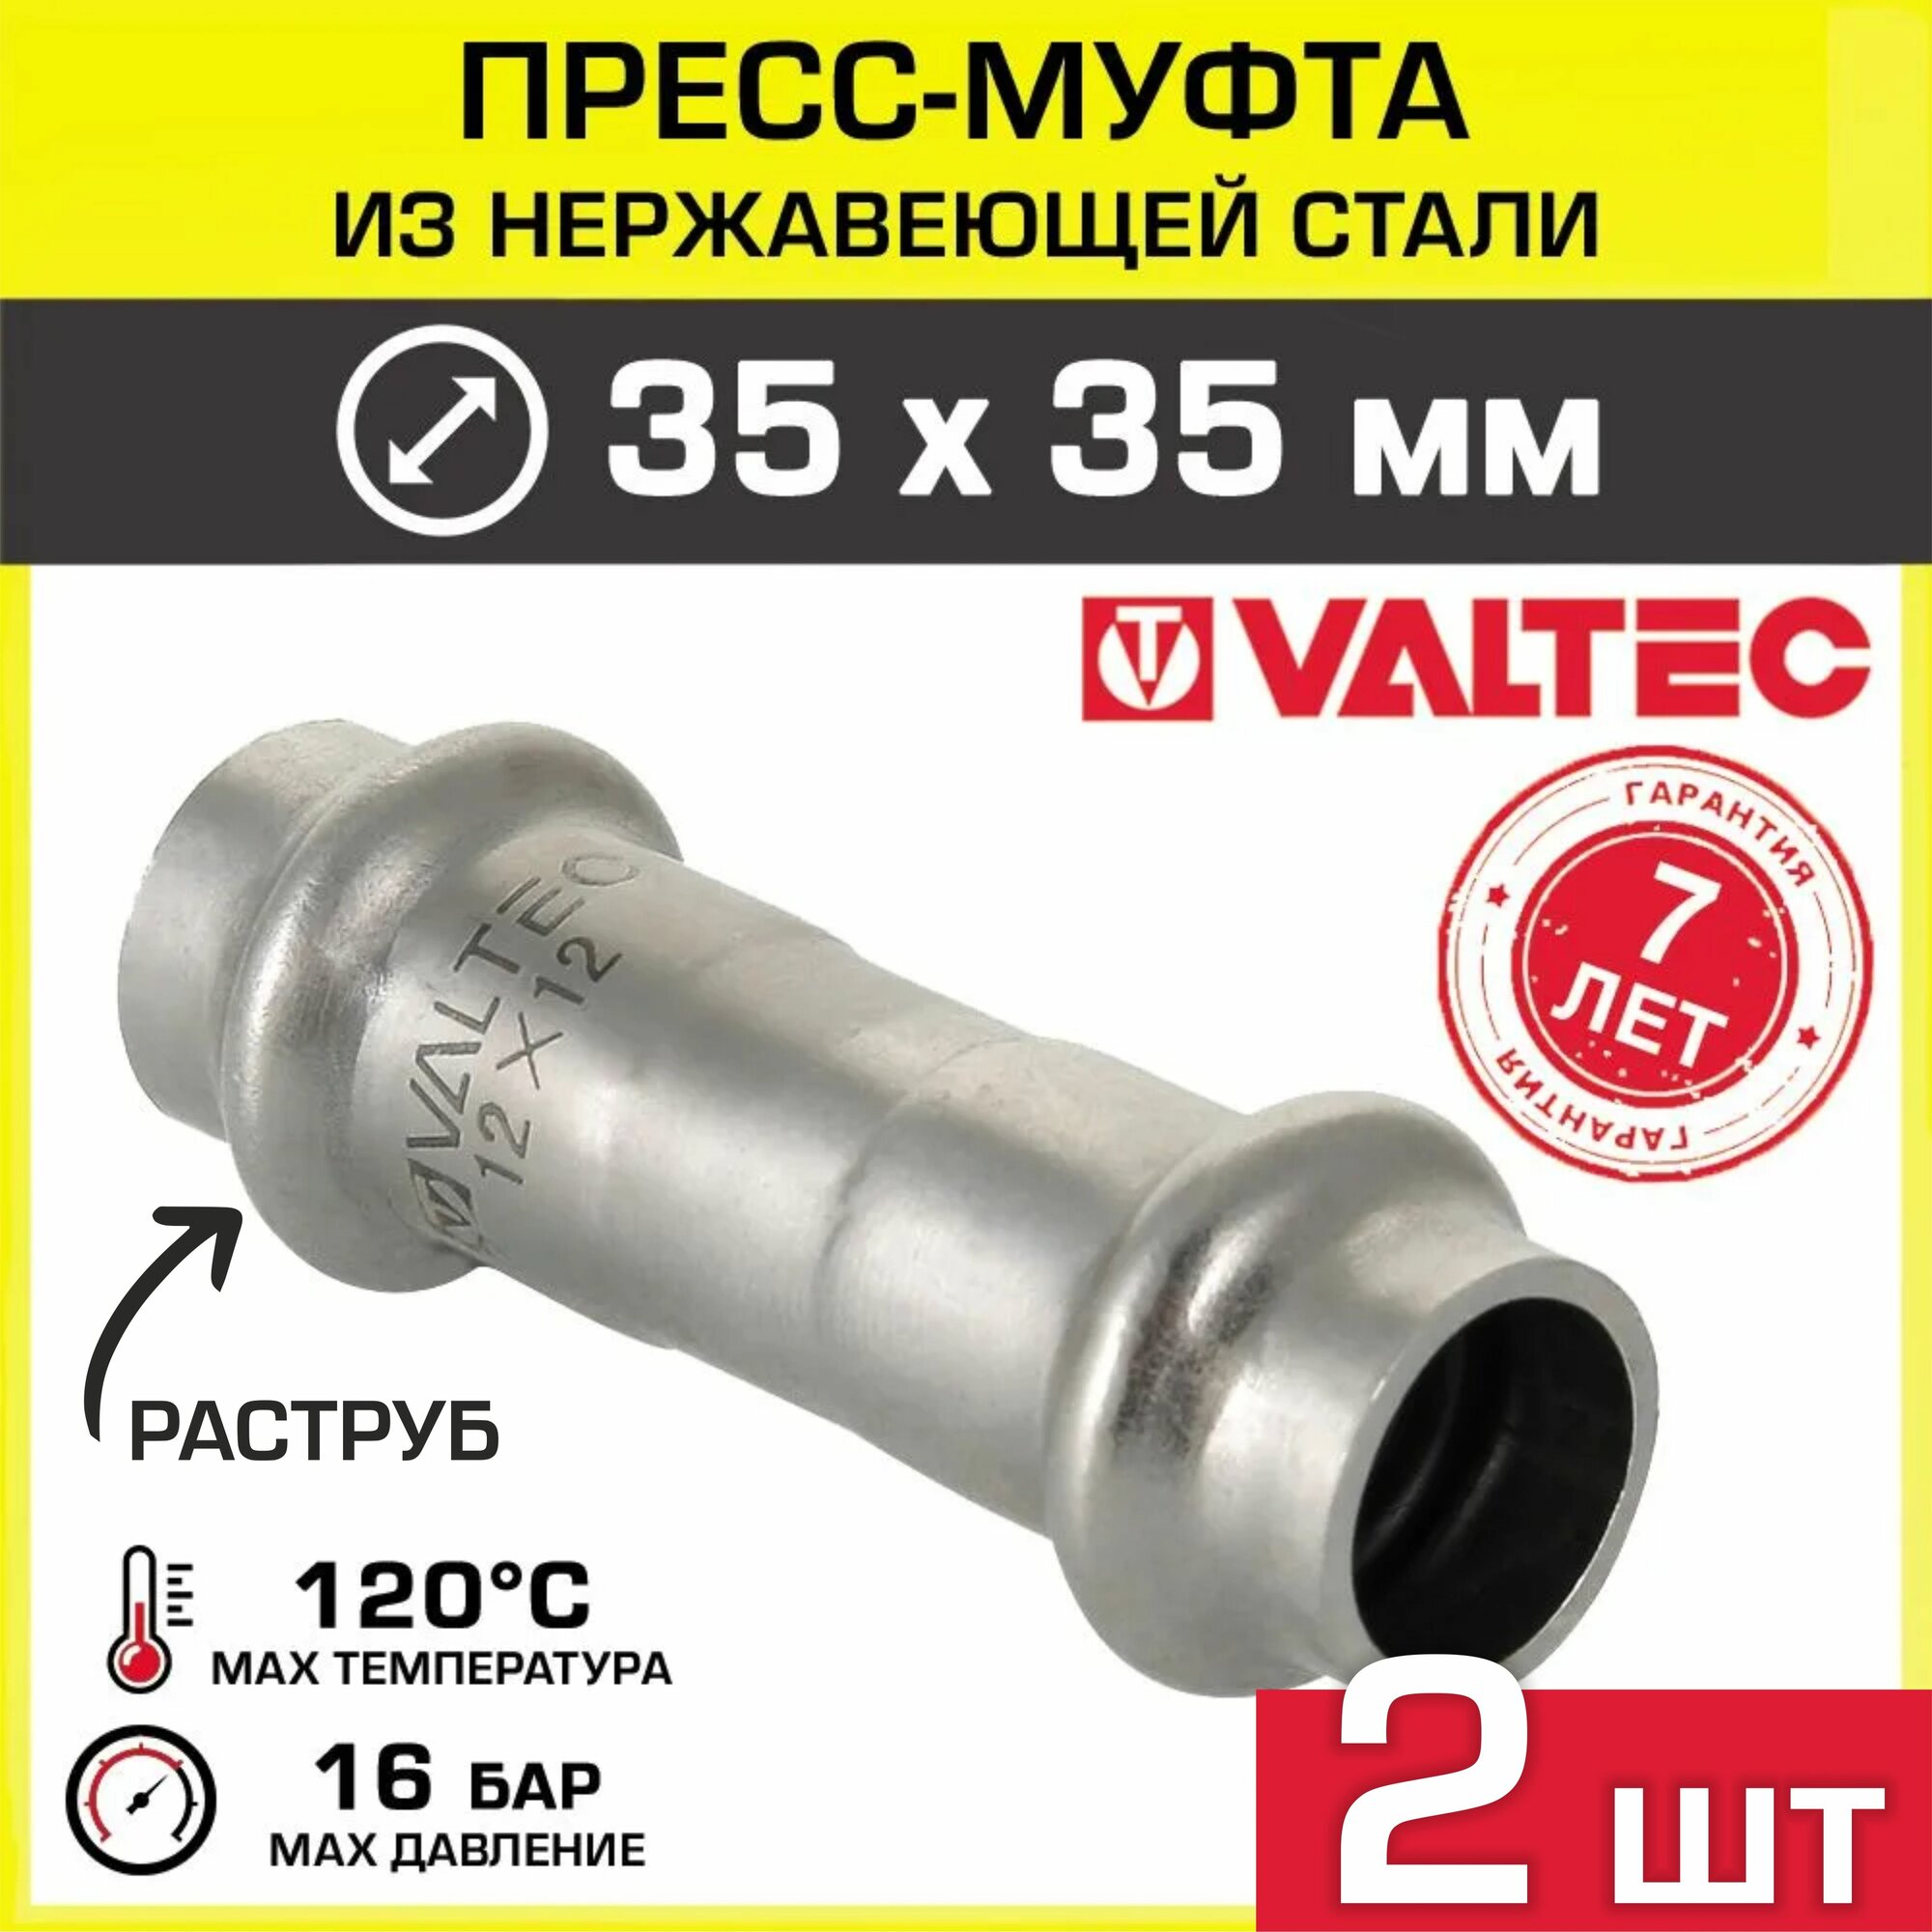 2 шт - Муфта 35 х 35 мм VALTEC из нержавеющей стали прямая / Пресс-фитинг соединительный из нержавейки для монтажа труб системы отопления и водоснабжения арт. VTi.903. I.003535